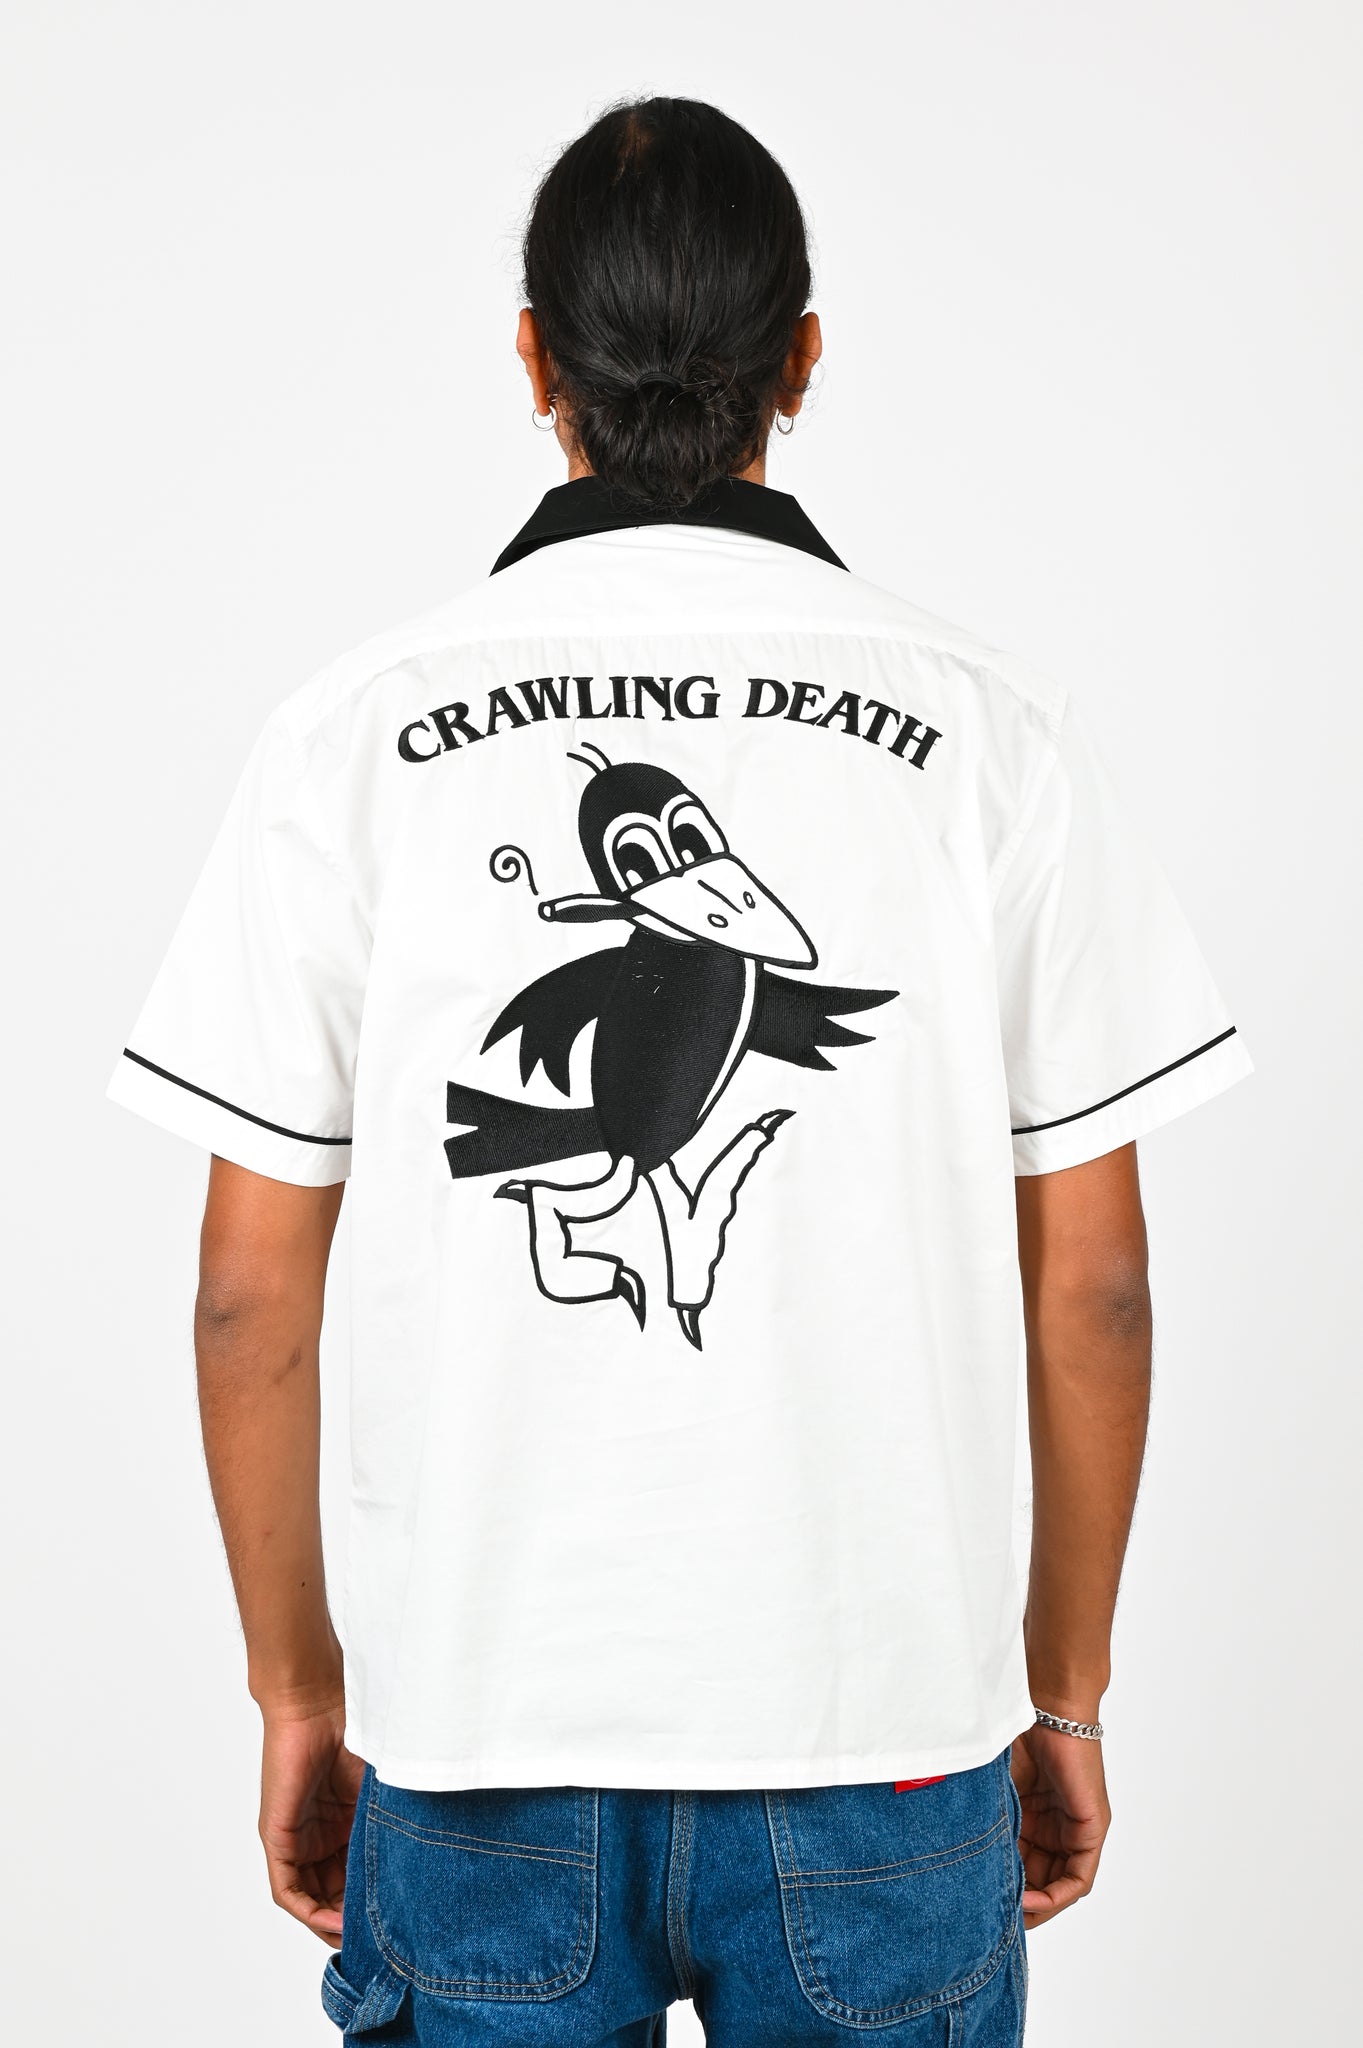 Crawling Death 'Crow' Bowling Shirt